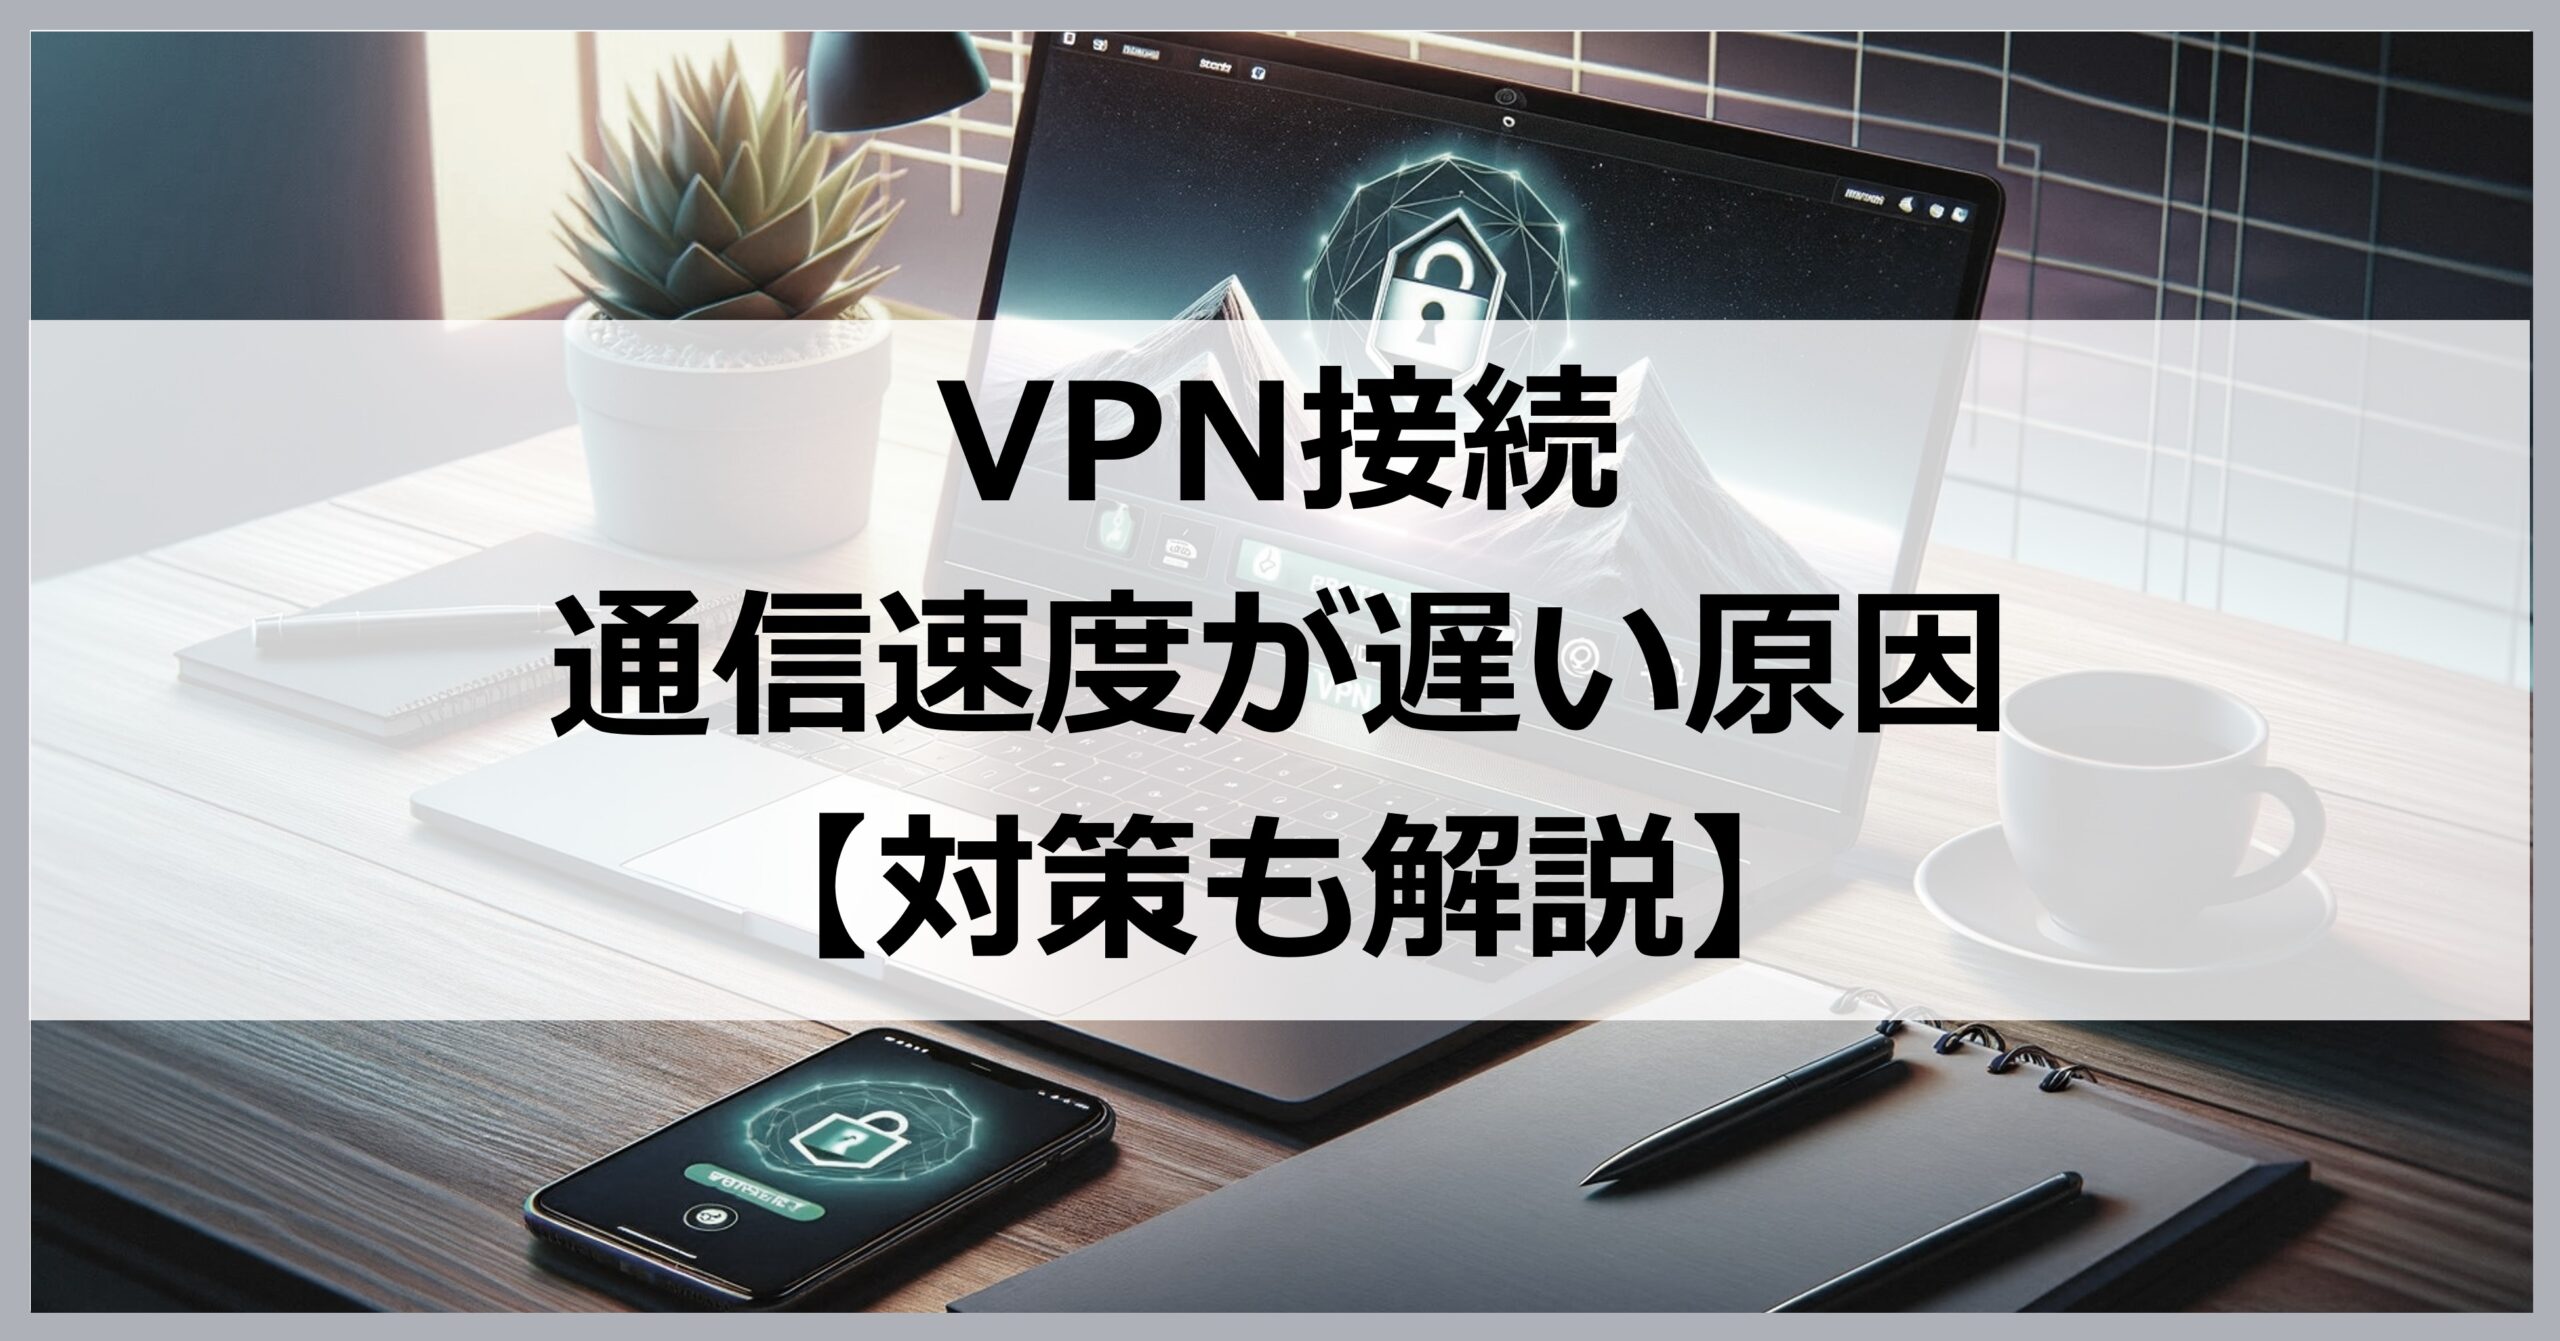 VPN接続で通信速度が遅い原因